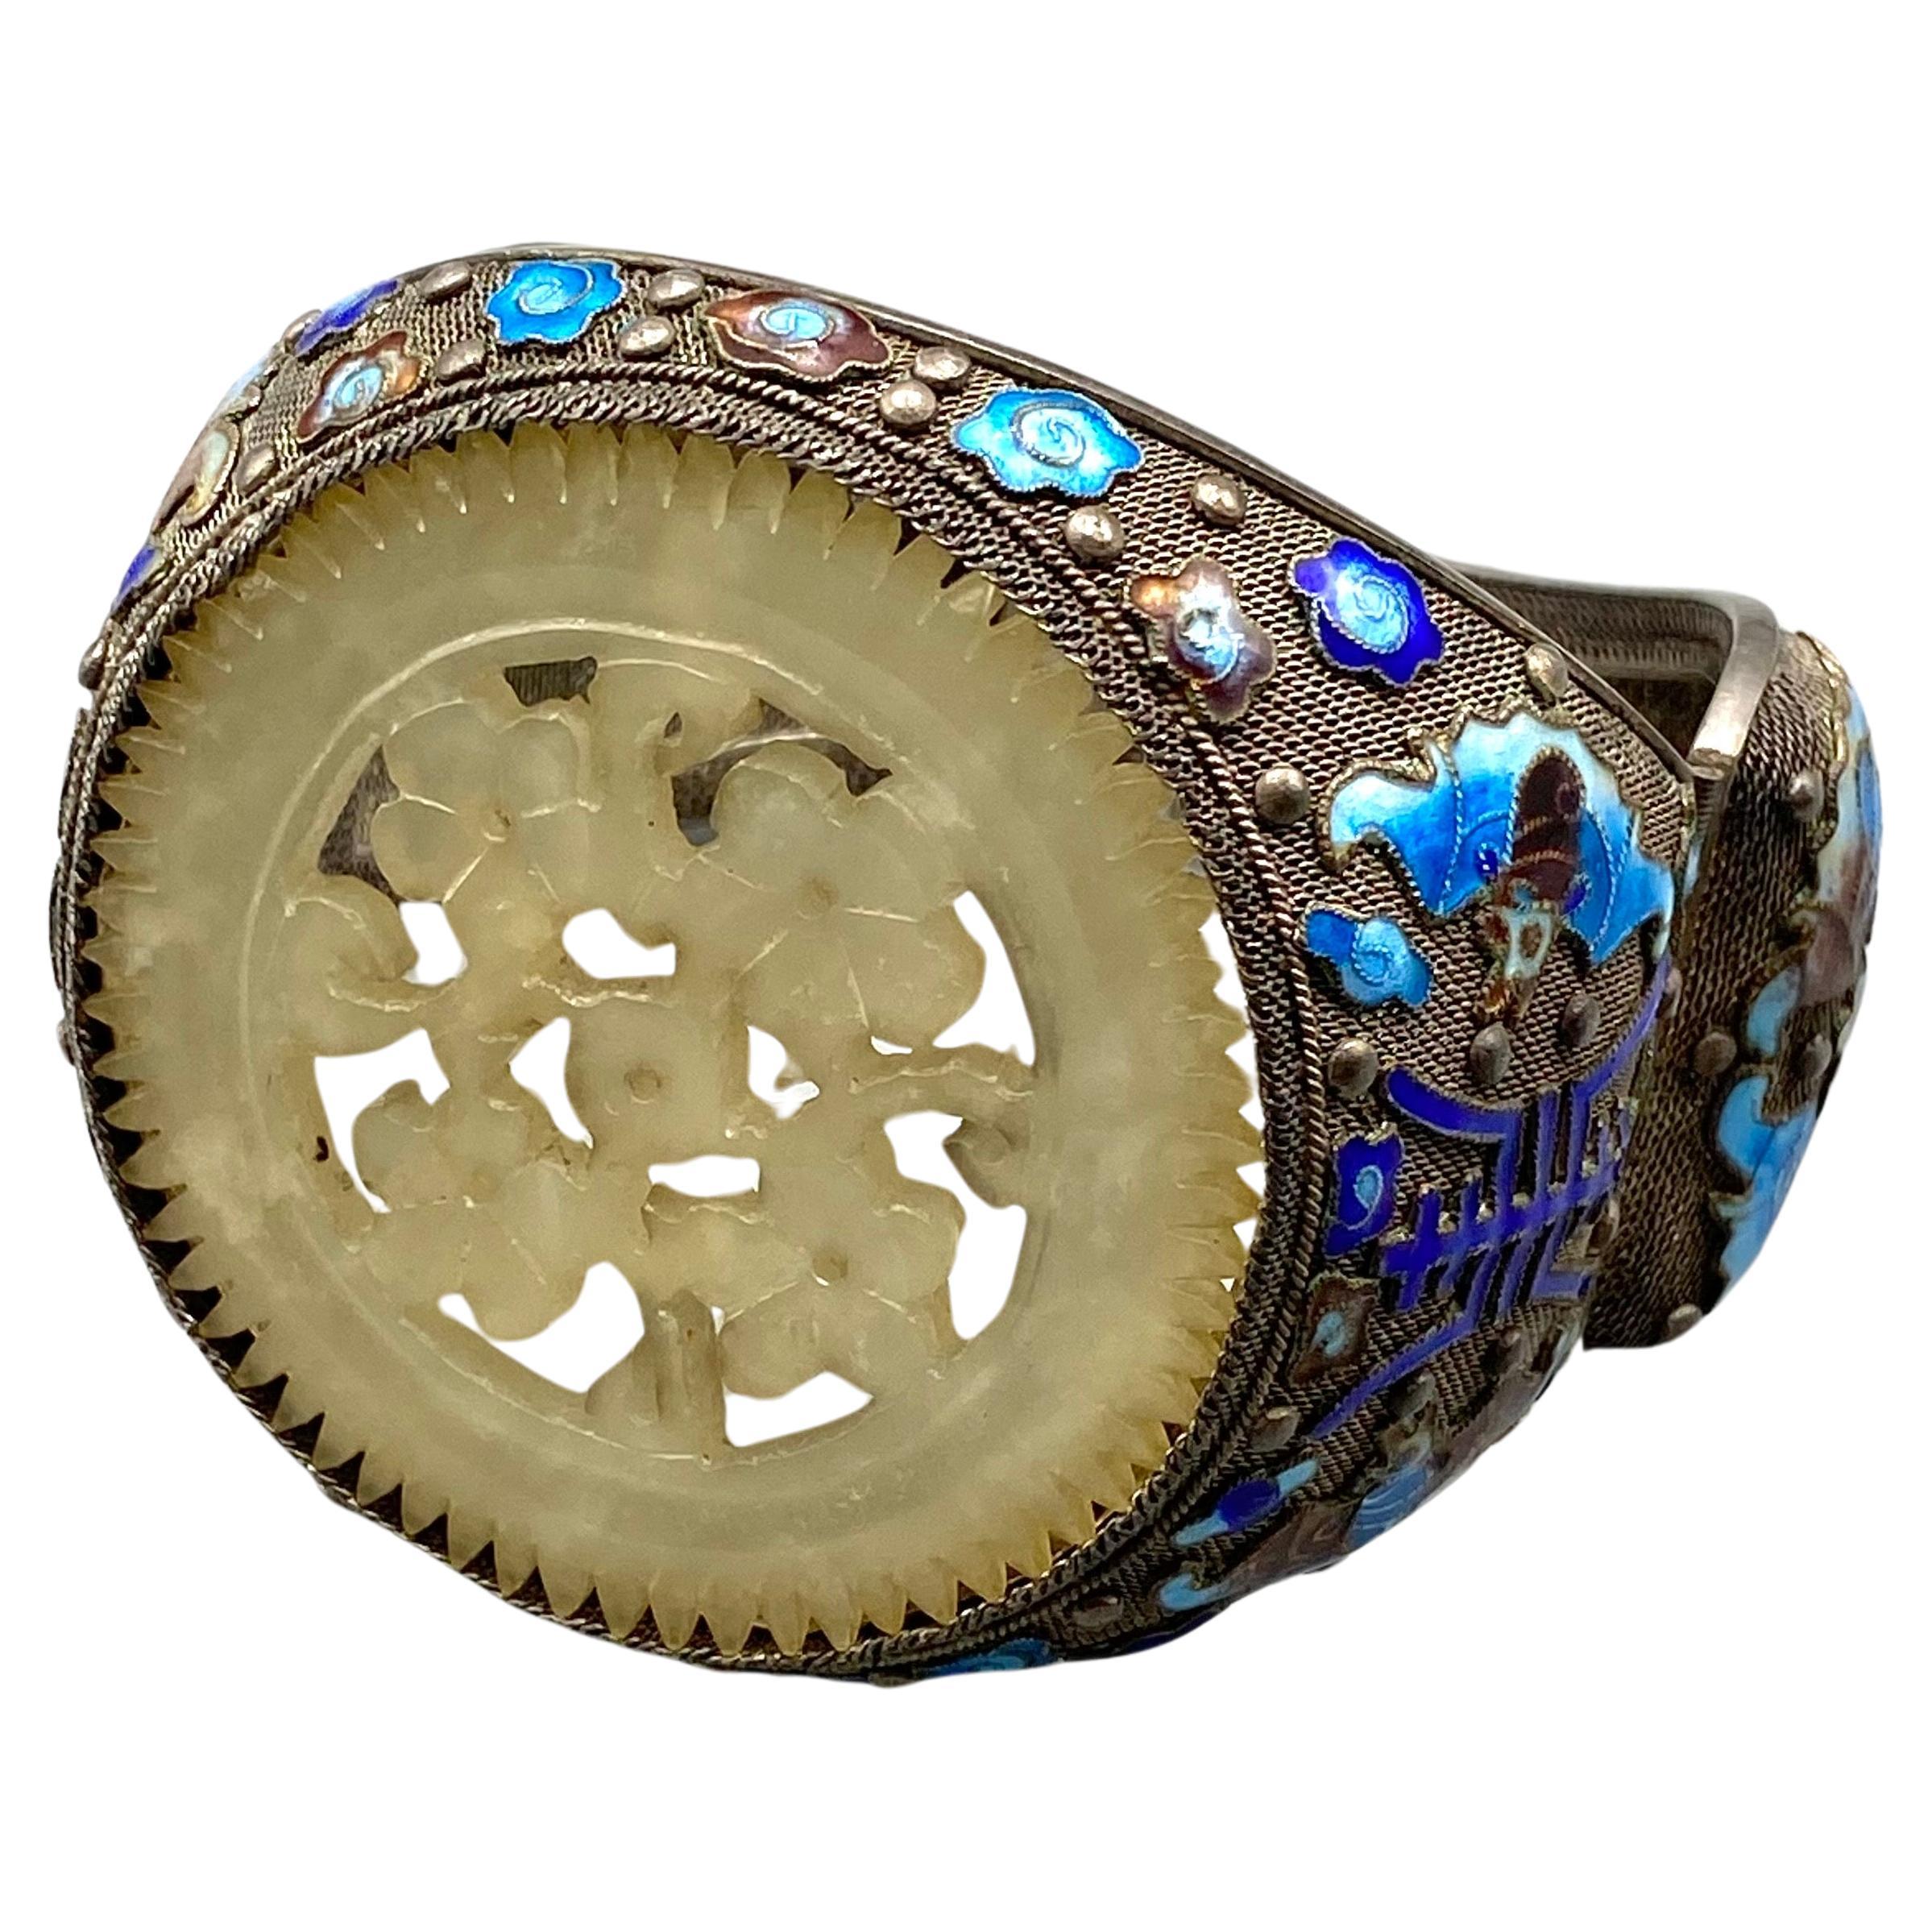 Dieses antike chinesische Export-Silber-Filigran-Armband zeichnet sich durch seine filigrane Arbeit aus, bei der zarte Silberdrähte miteinander verdreht und verlötet sind, um ein schönes Design zu schaffen. Das Armband ist mit blauer,